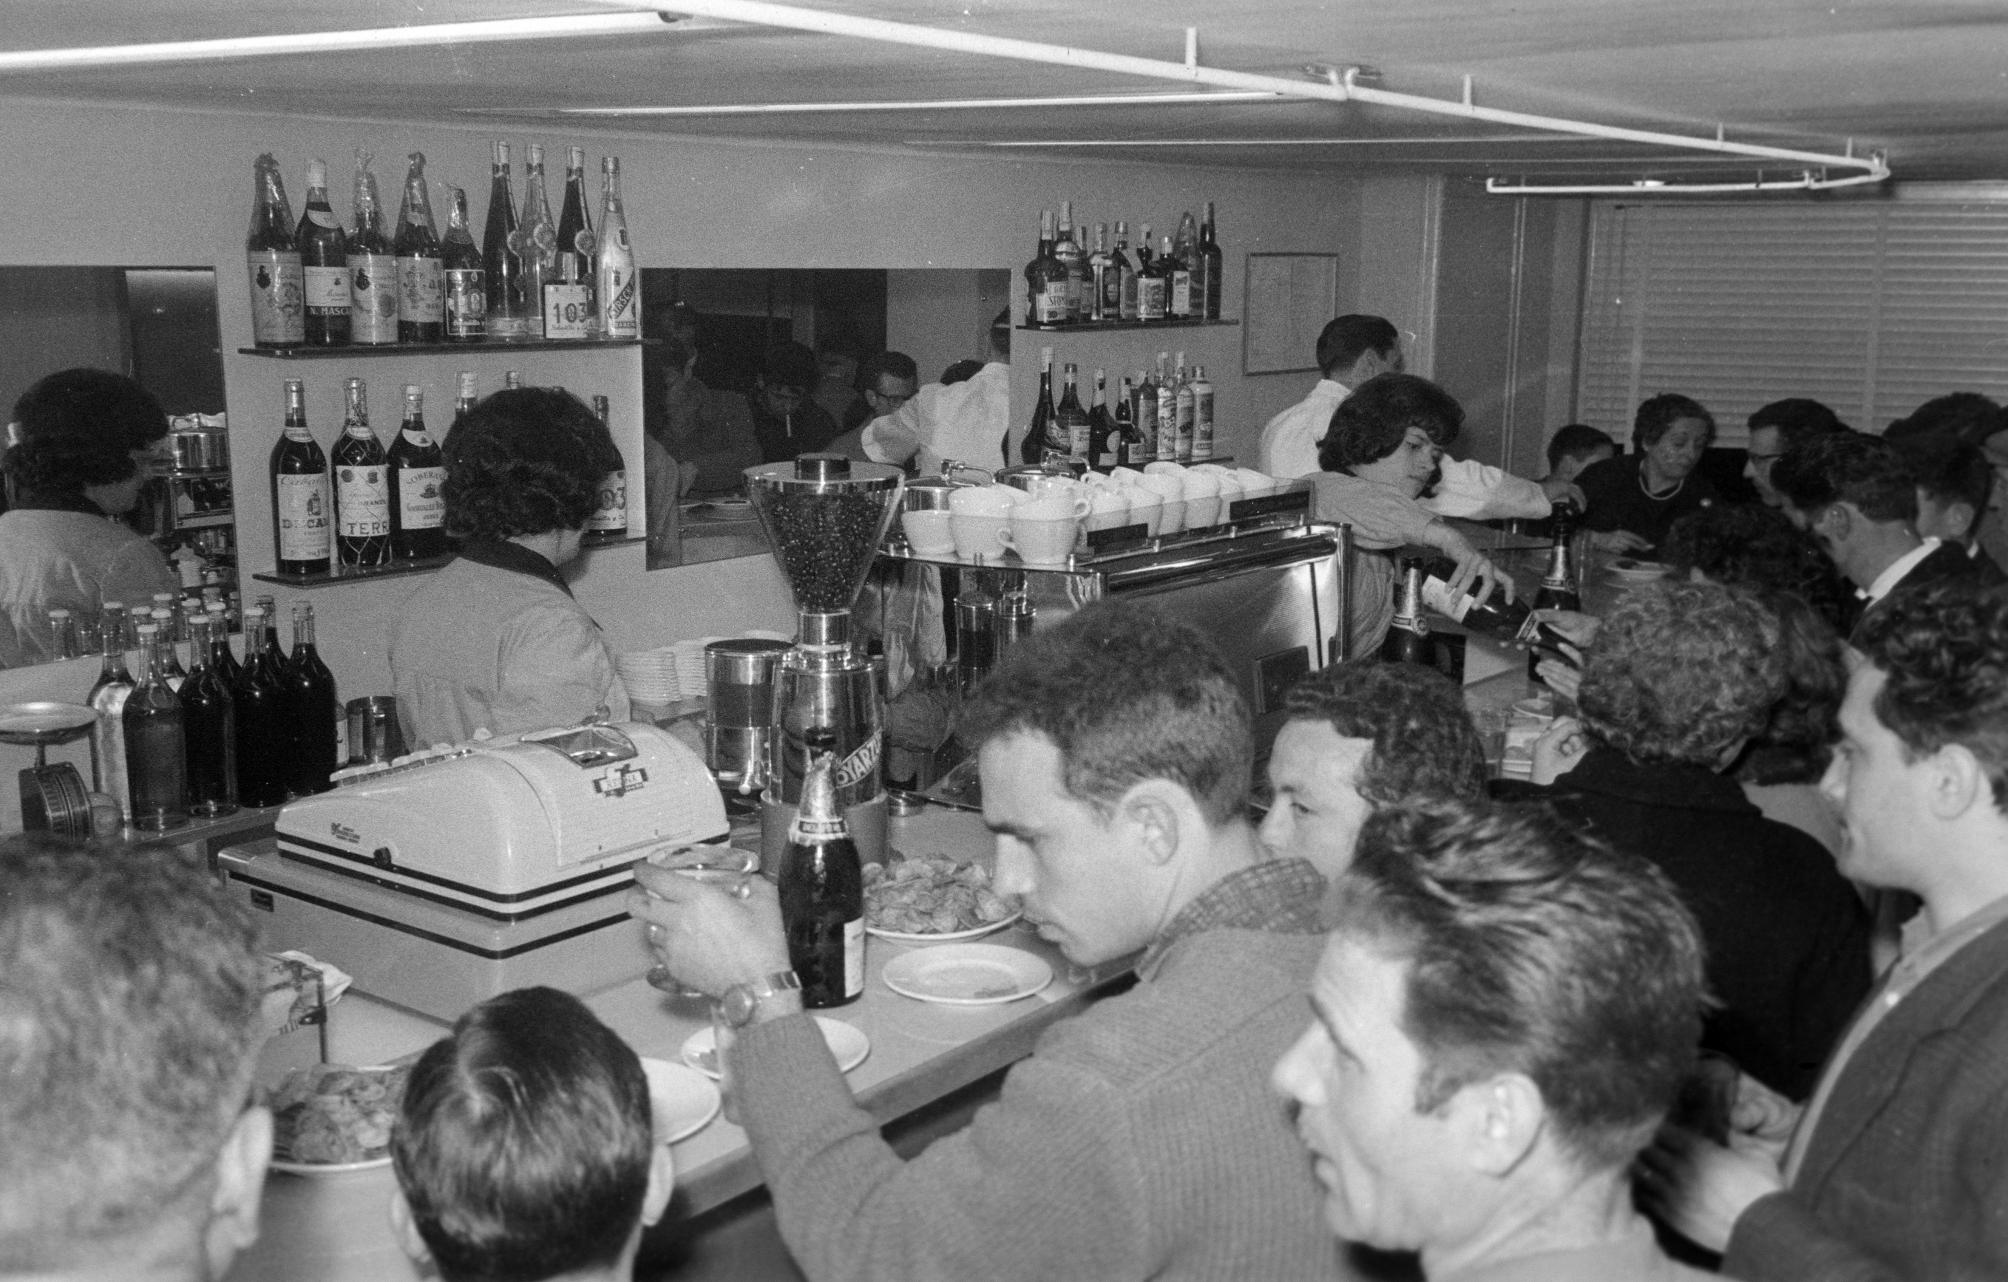 Inauguració del bar Esport el 1963. Núm. reg. 36712  